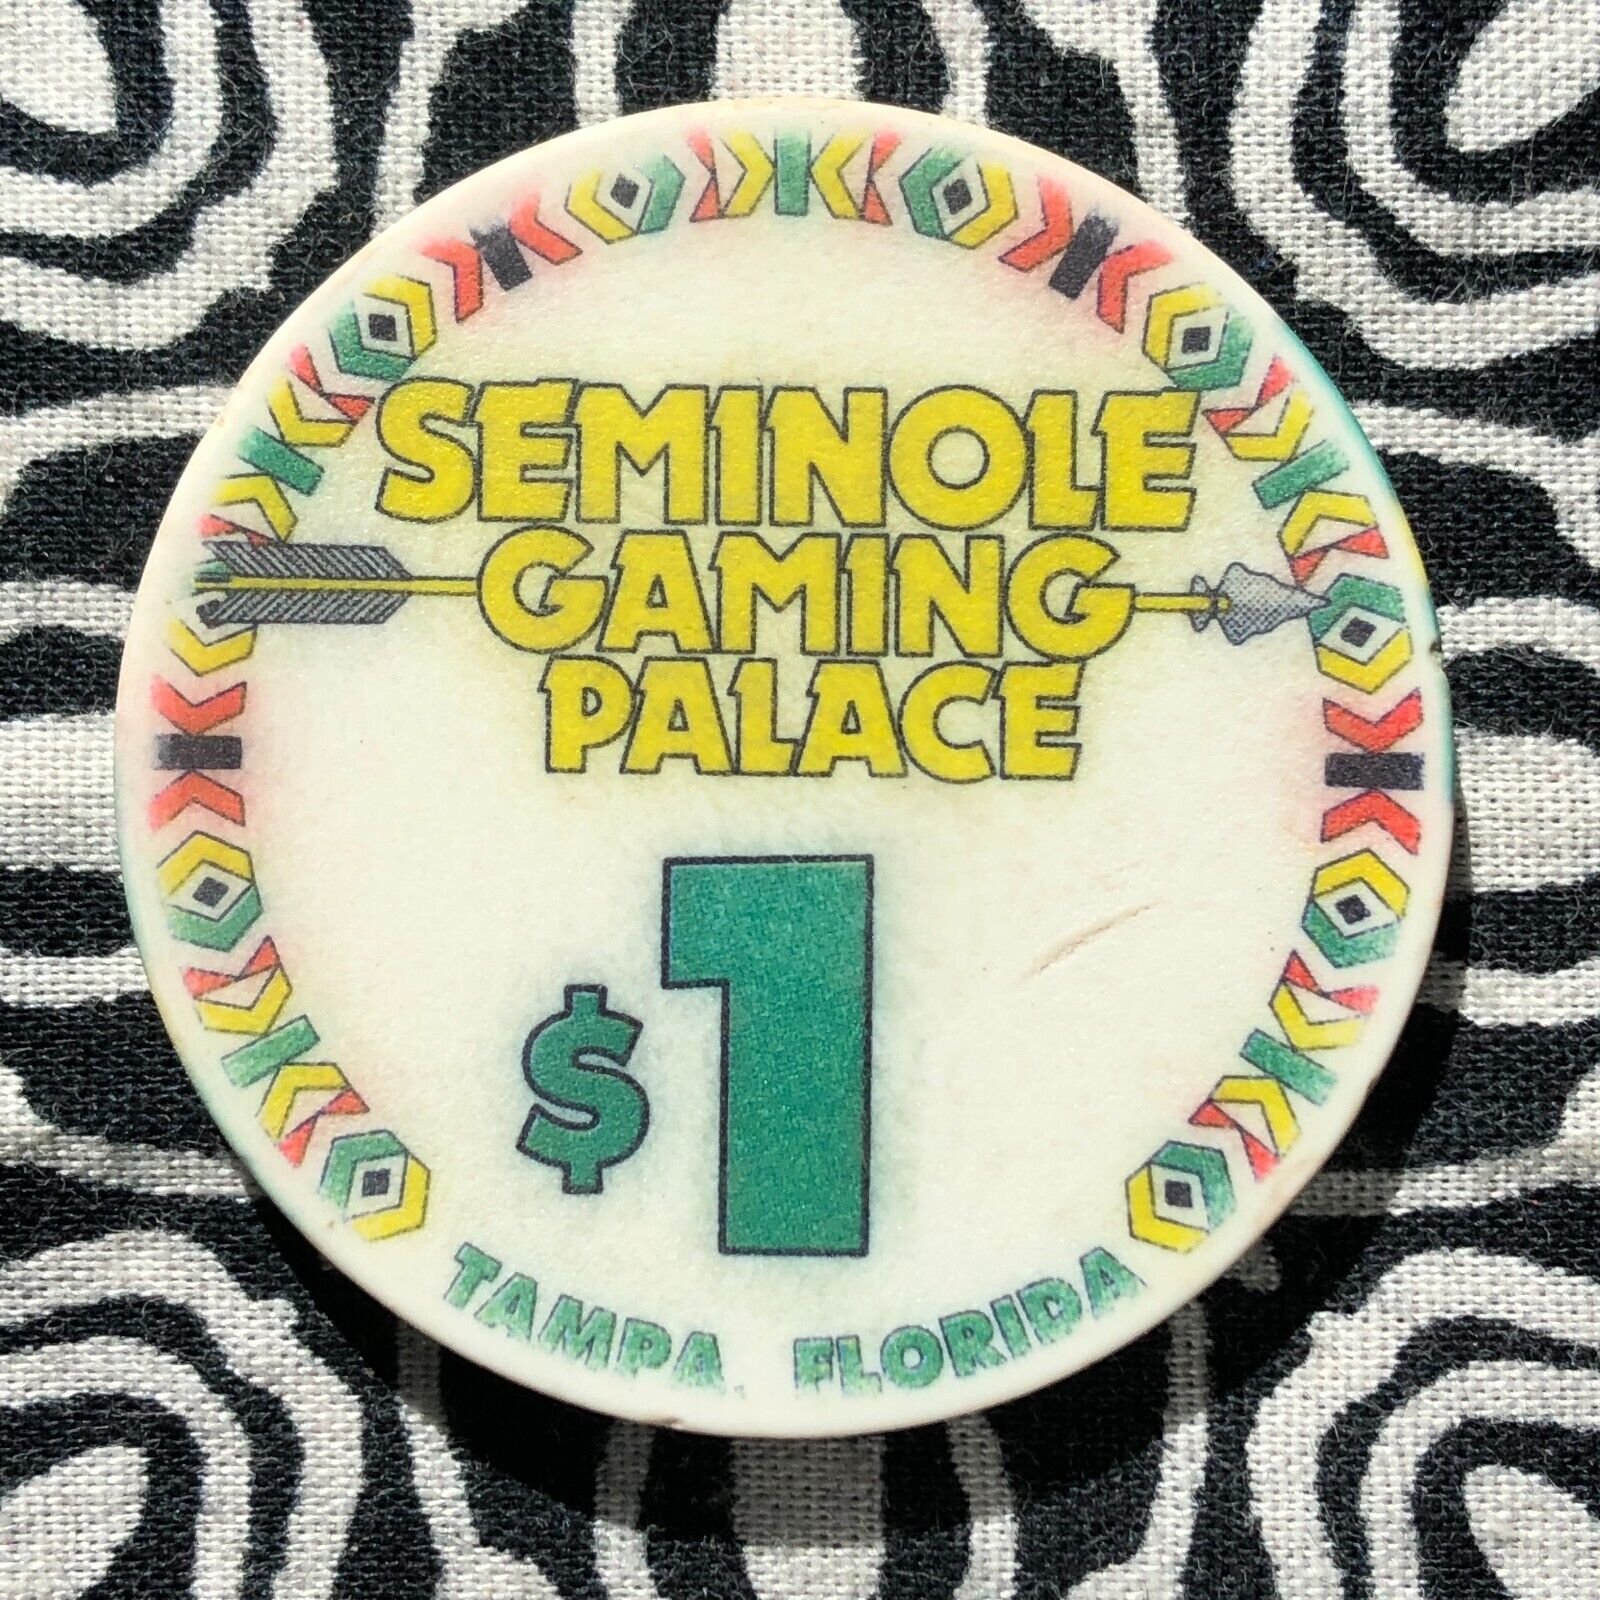 Seminole Gaming Palace $1 Tampa, Florida Gaming Poker Casino Chip E36